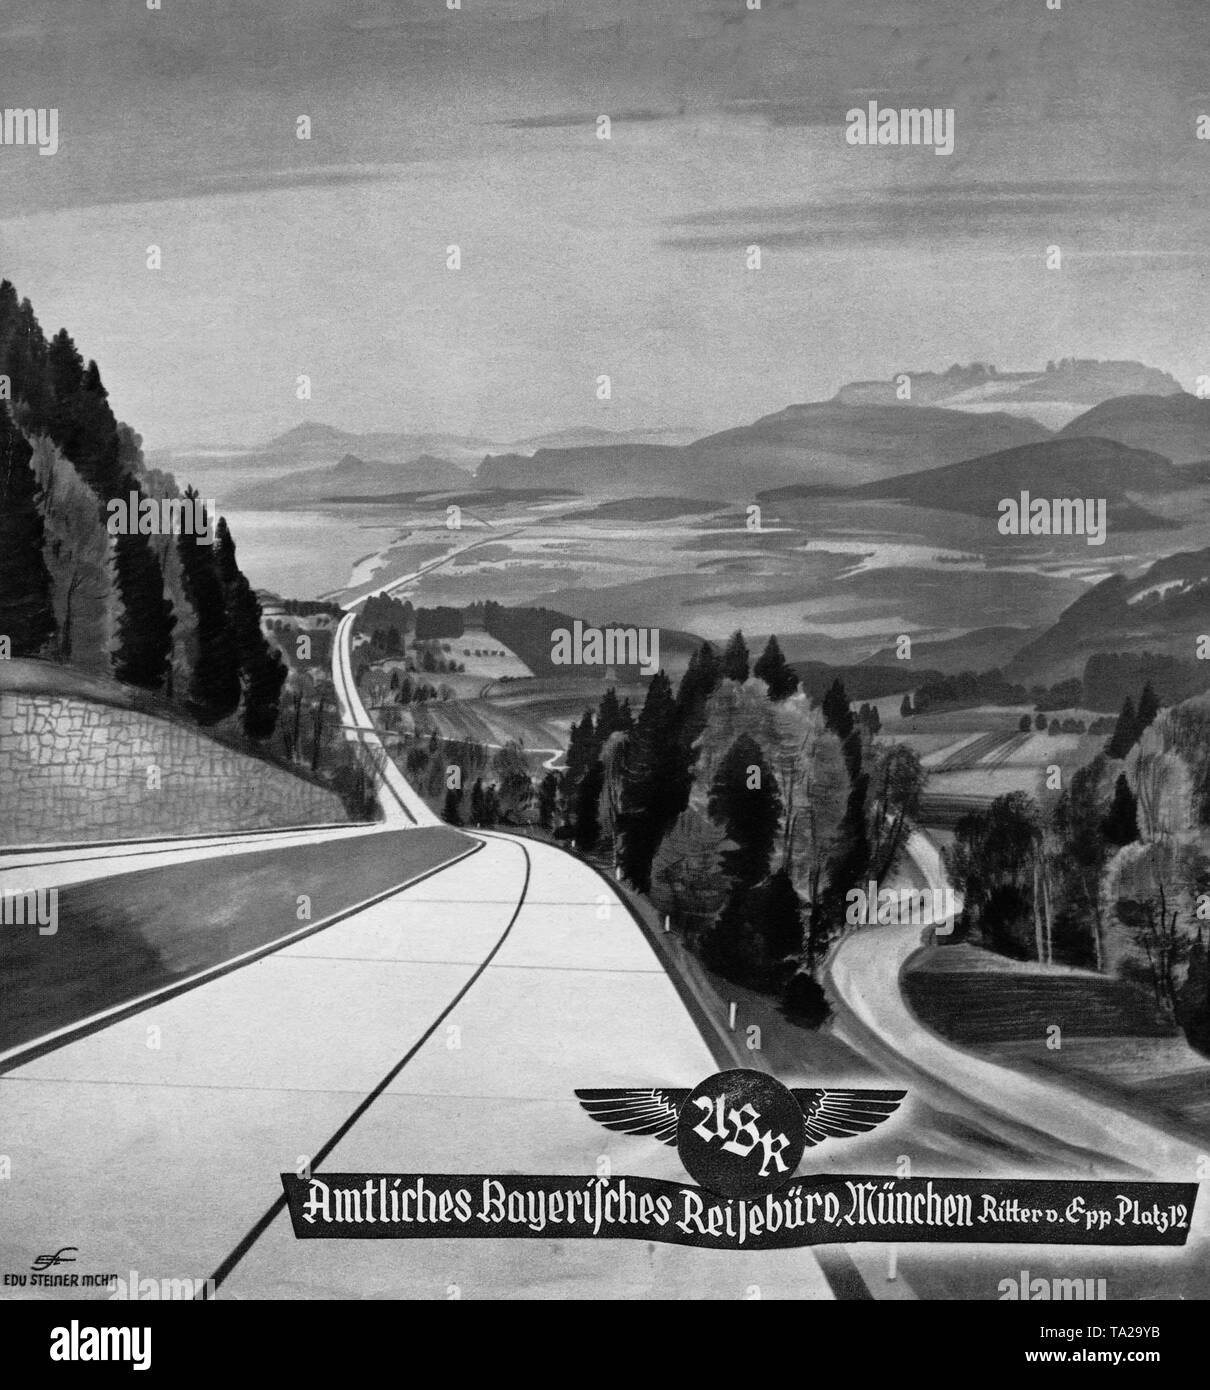 Questo dettaglio da un opuscolo del Amtliches Bayerisches Reisebuero (ufficiale bavarese agenzia di viaggi) mostra una strada che costeggia un lago di montagna. Foto Stock